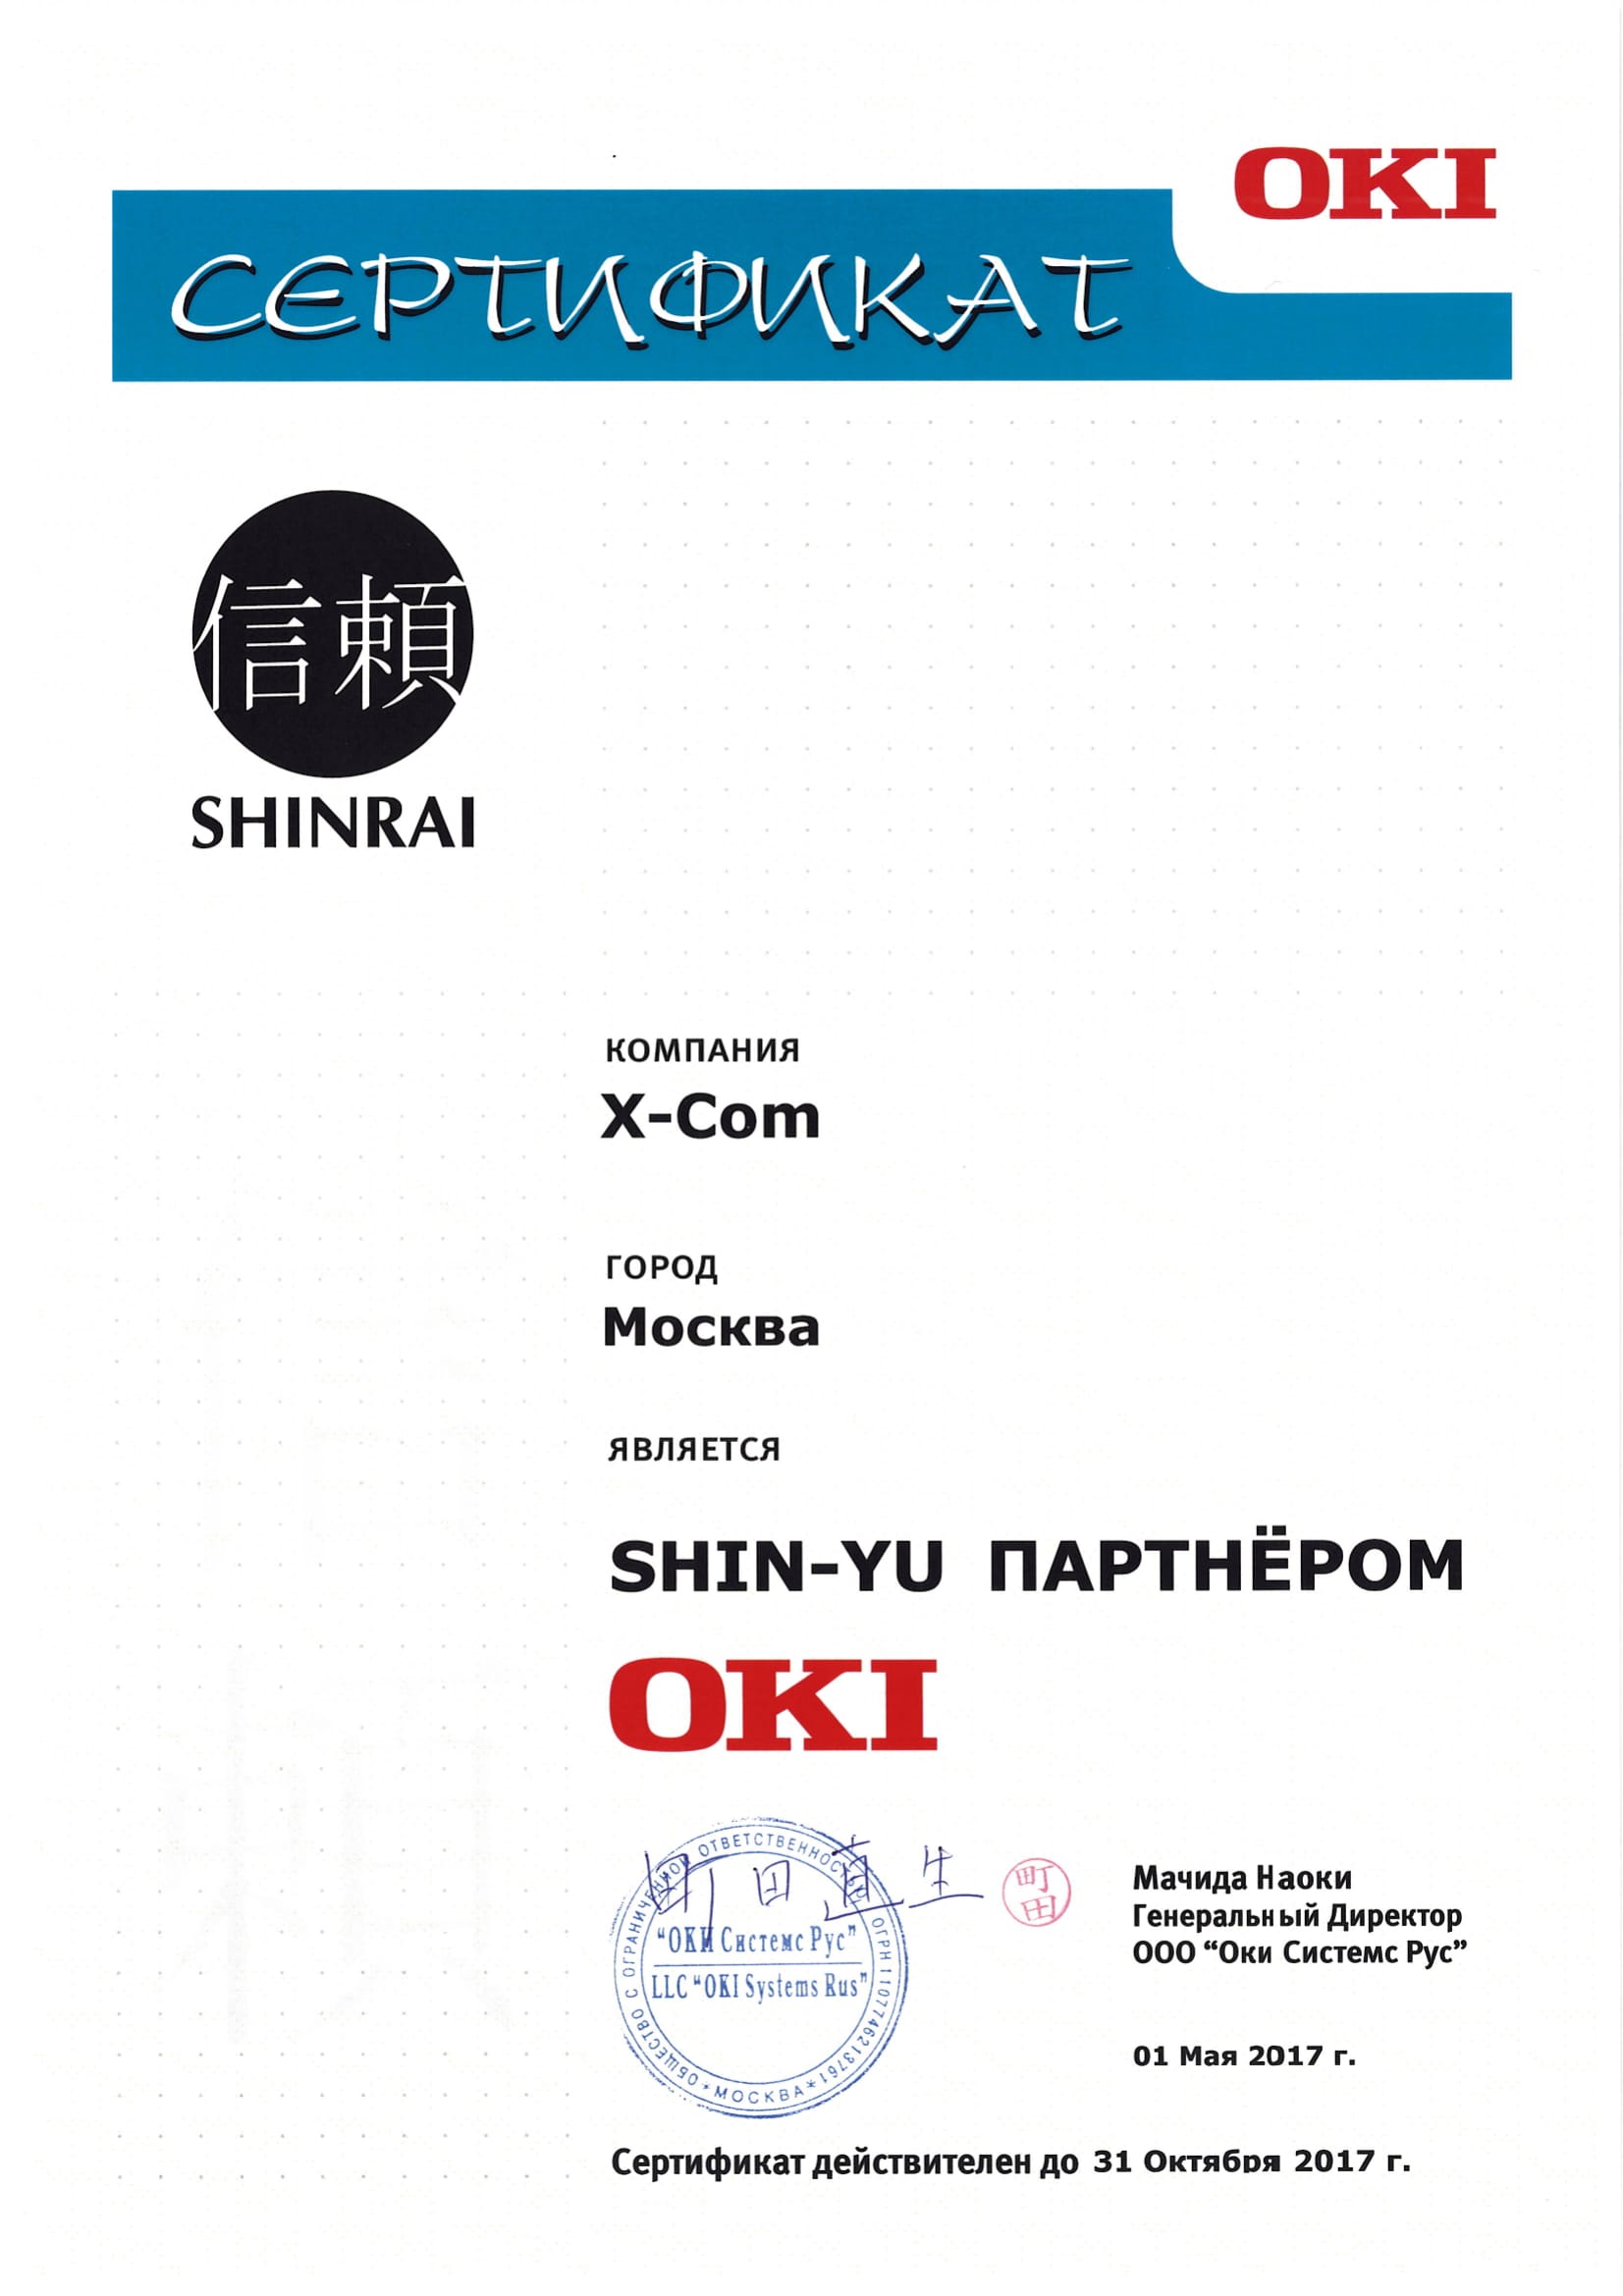 X-Com|Системный интегратор получил высший статус авторизации SHIN-YU партнерской программы OKI